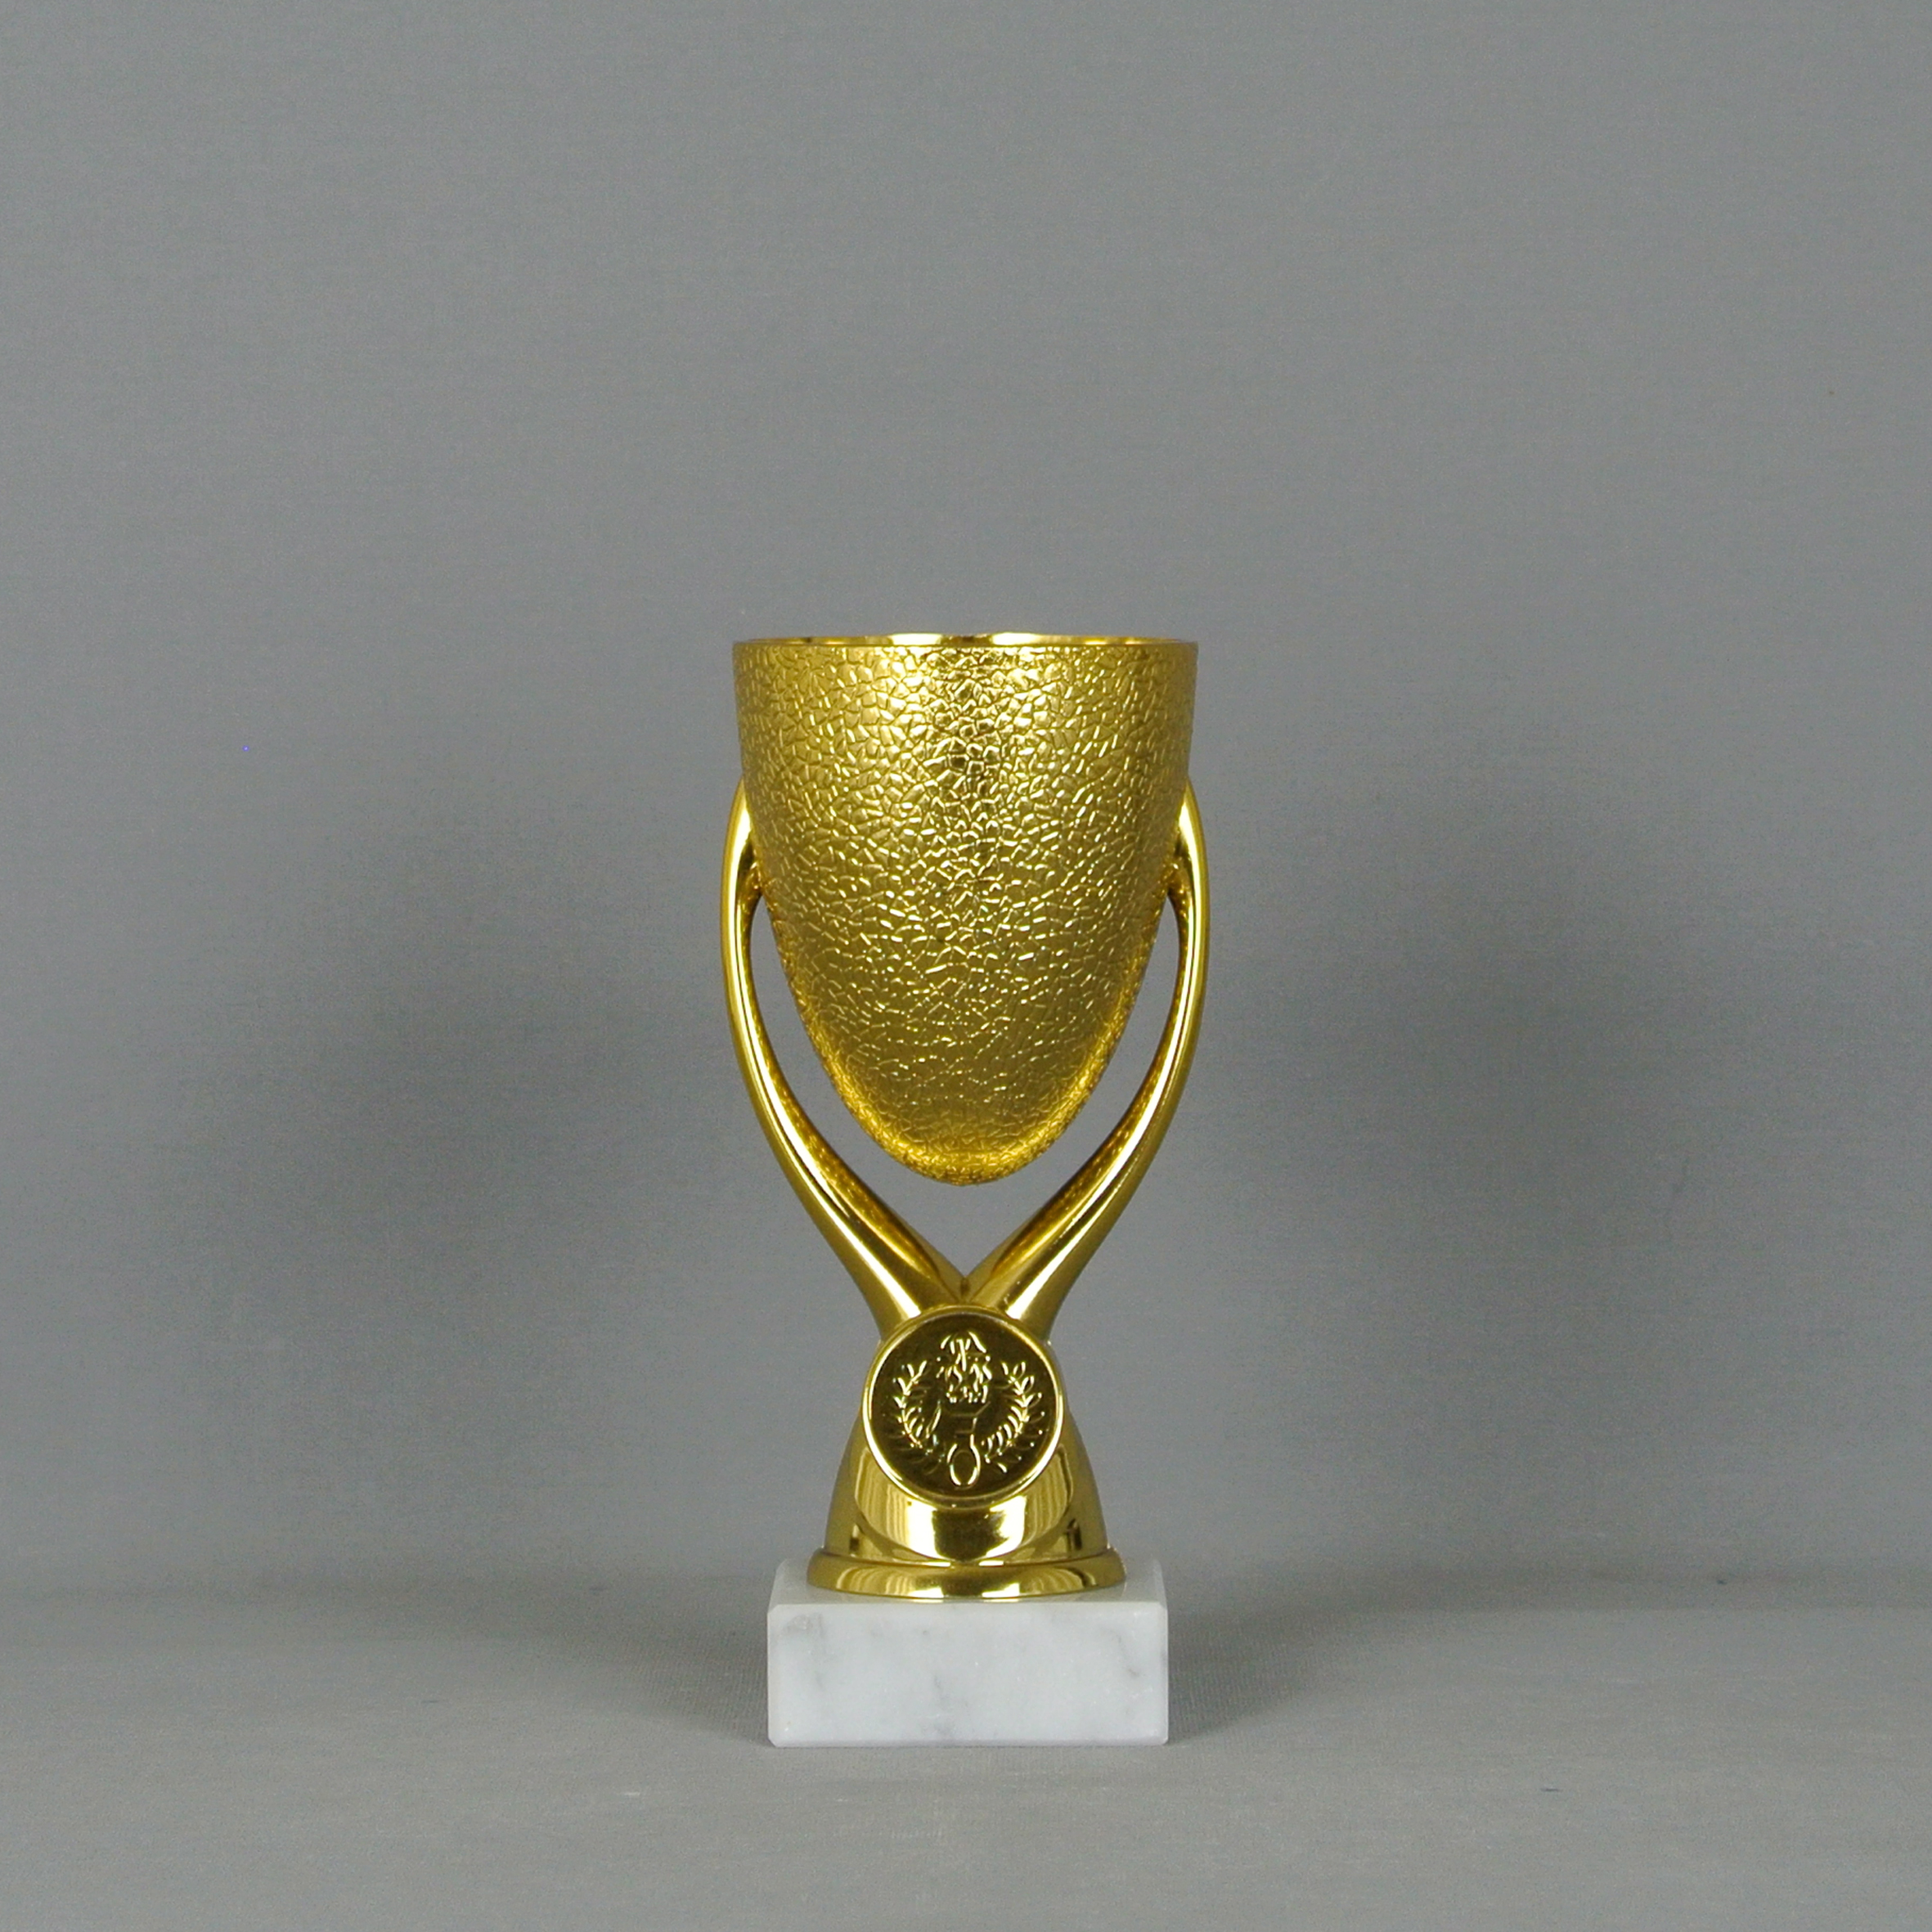 3er-Serie extravagante Sport-Pokale mit Wunschgravur/Emblem gold/silber 